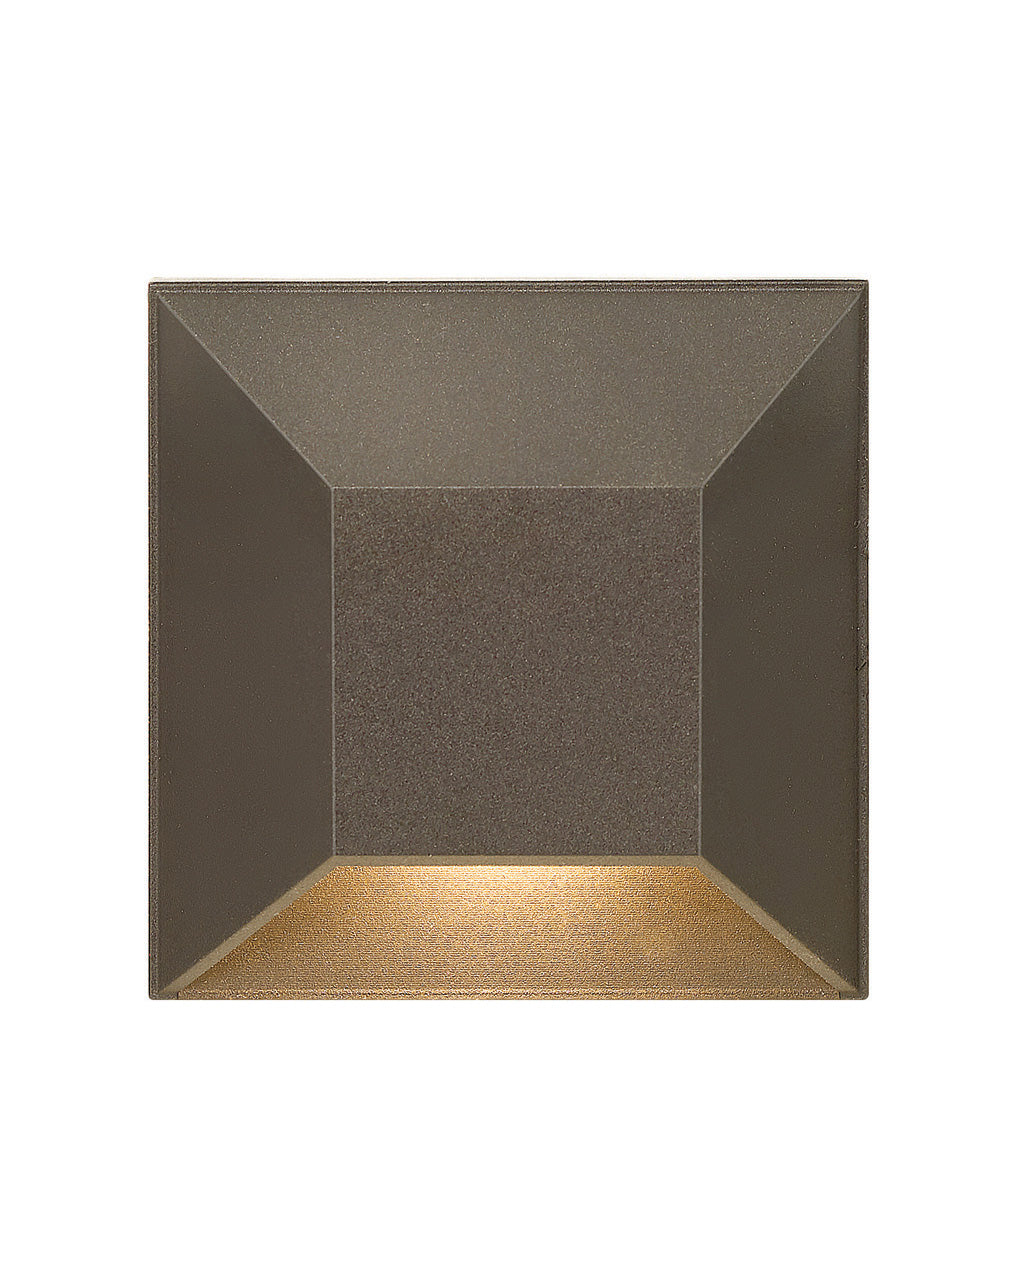 Hinkley - 15222BZ - LED Landscape Deck - Nuvi - Bronze